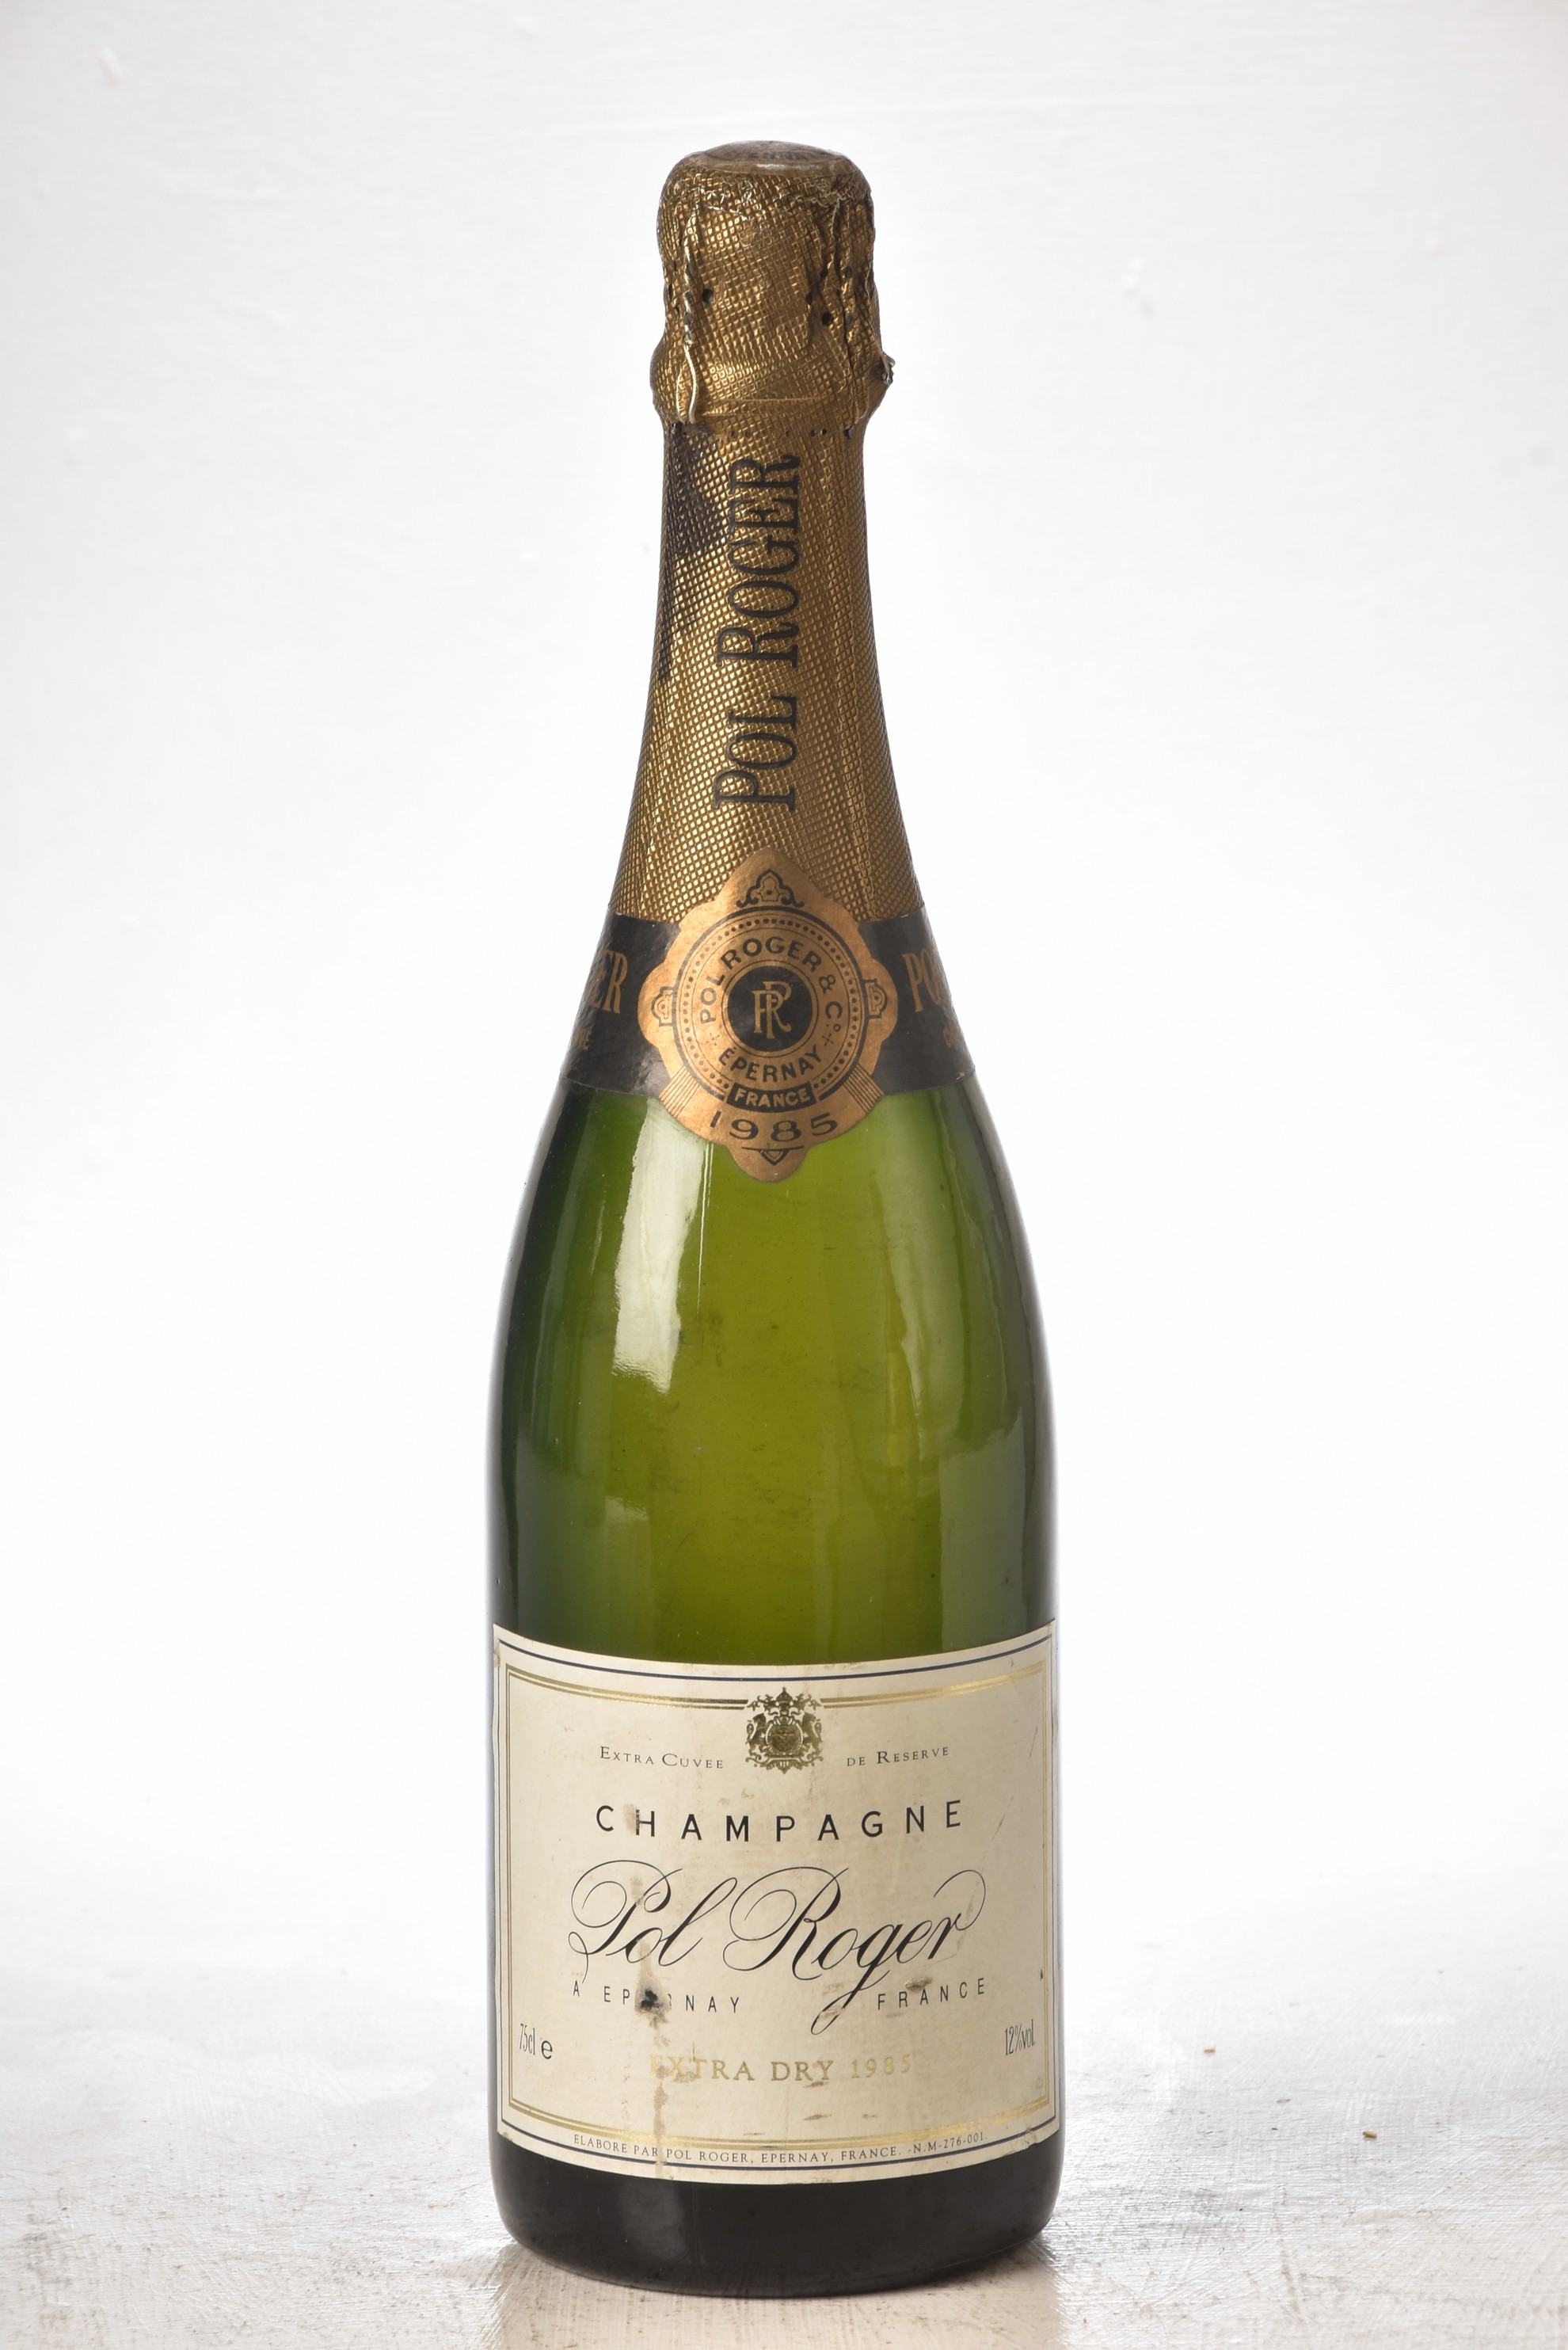 Champagne Pol Roger Brut Vintage 1985 1 bt